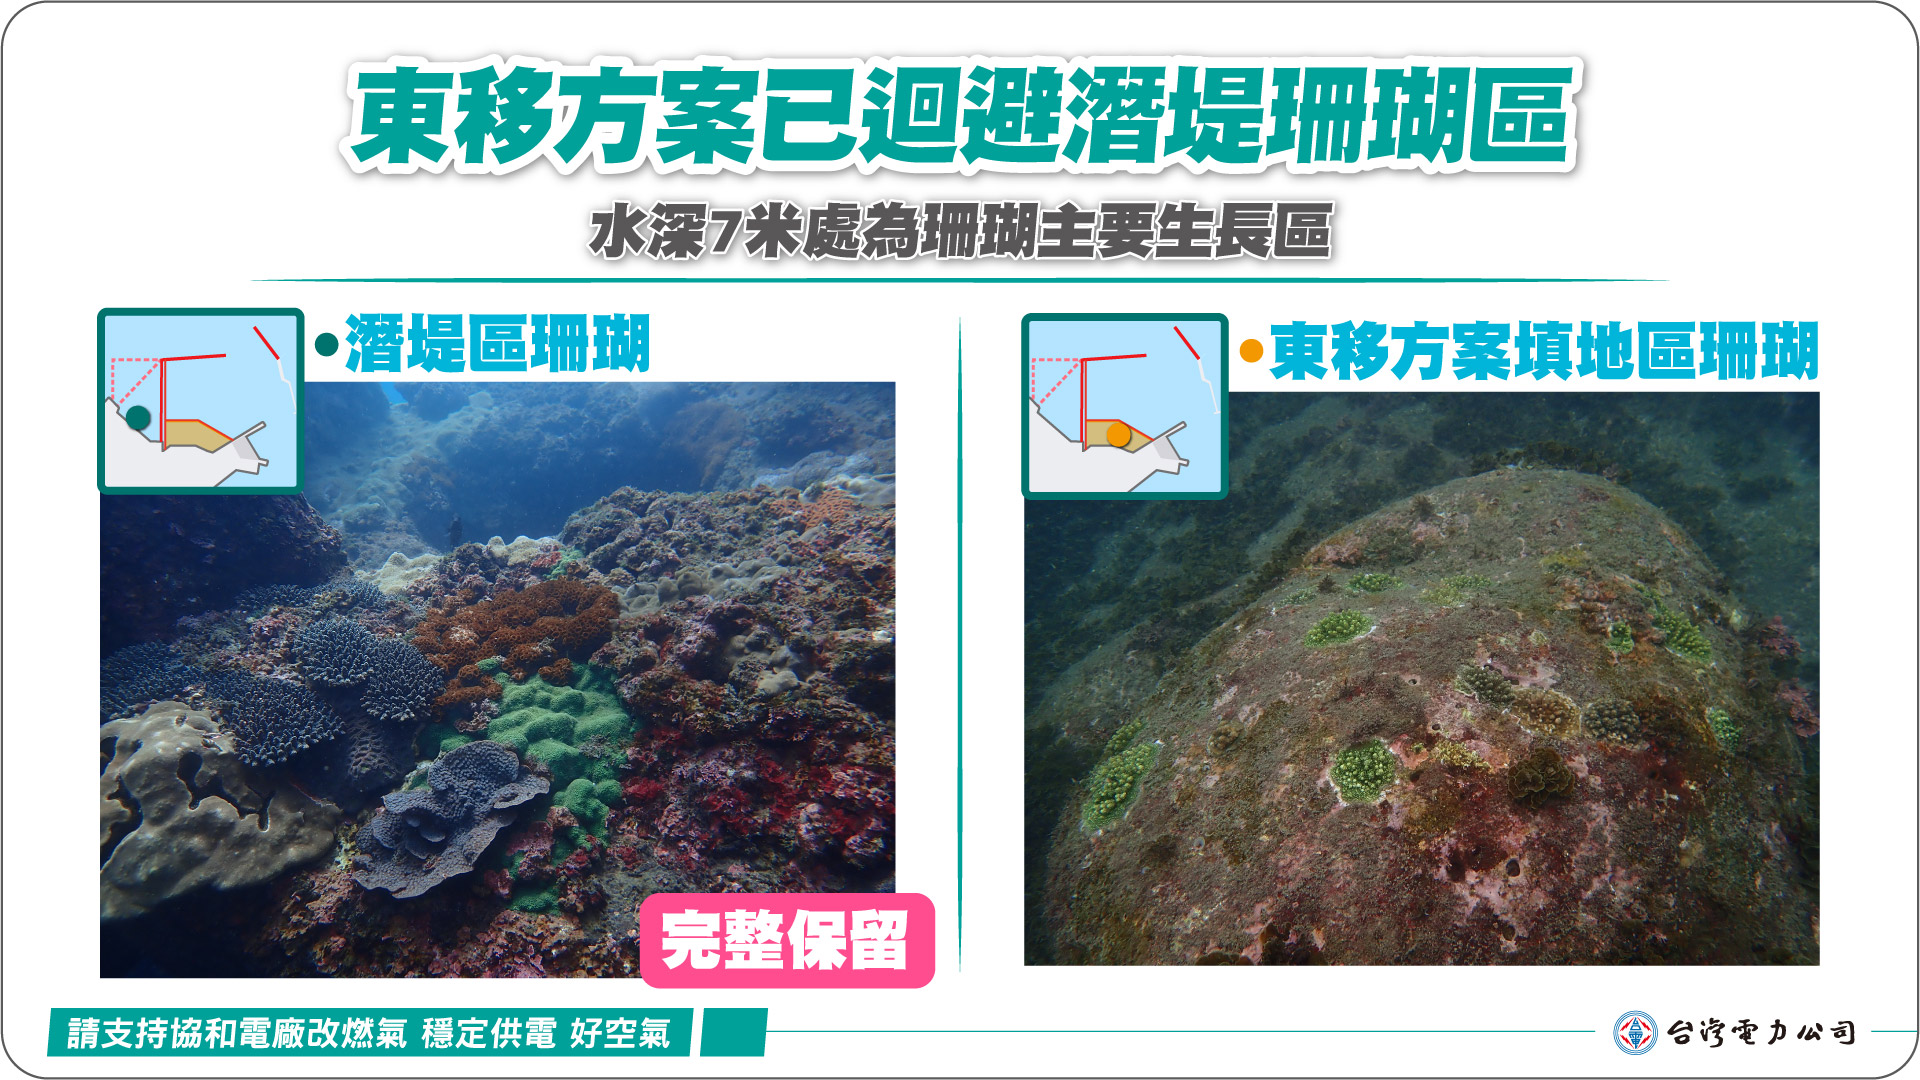 四接填地東移新方案已迴避潛堤珊瑚區 水深7米處為珊瑚主要生長區